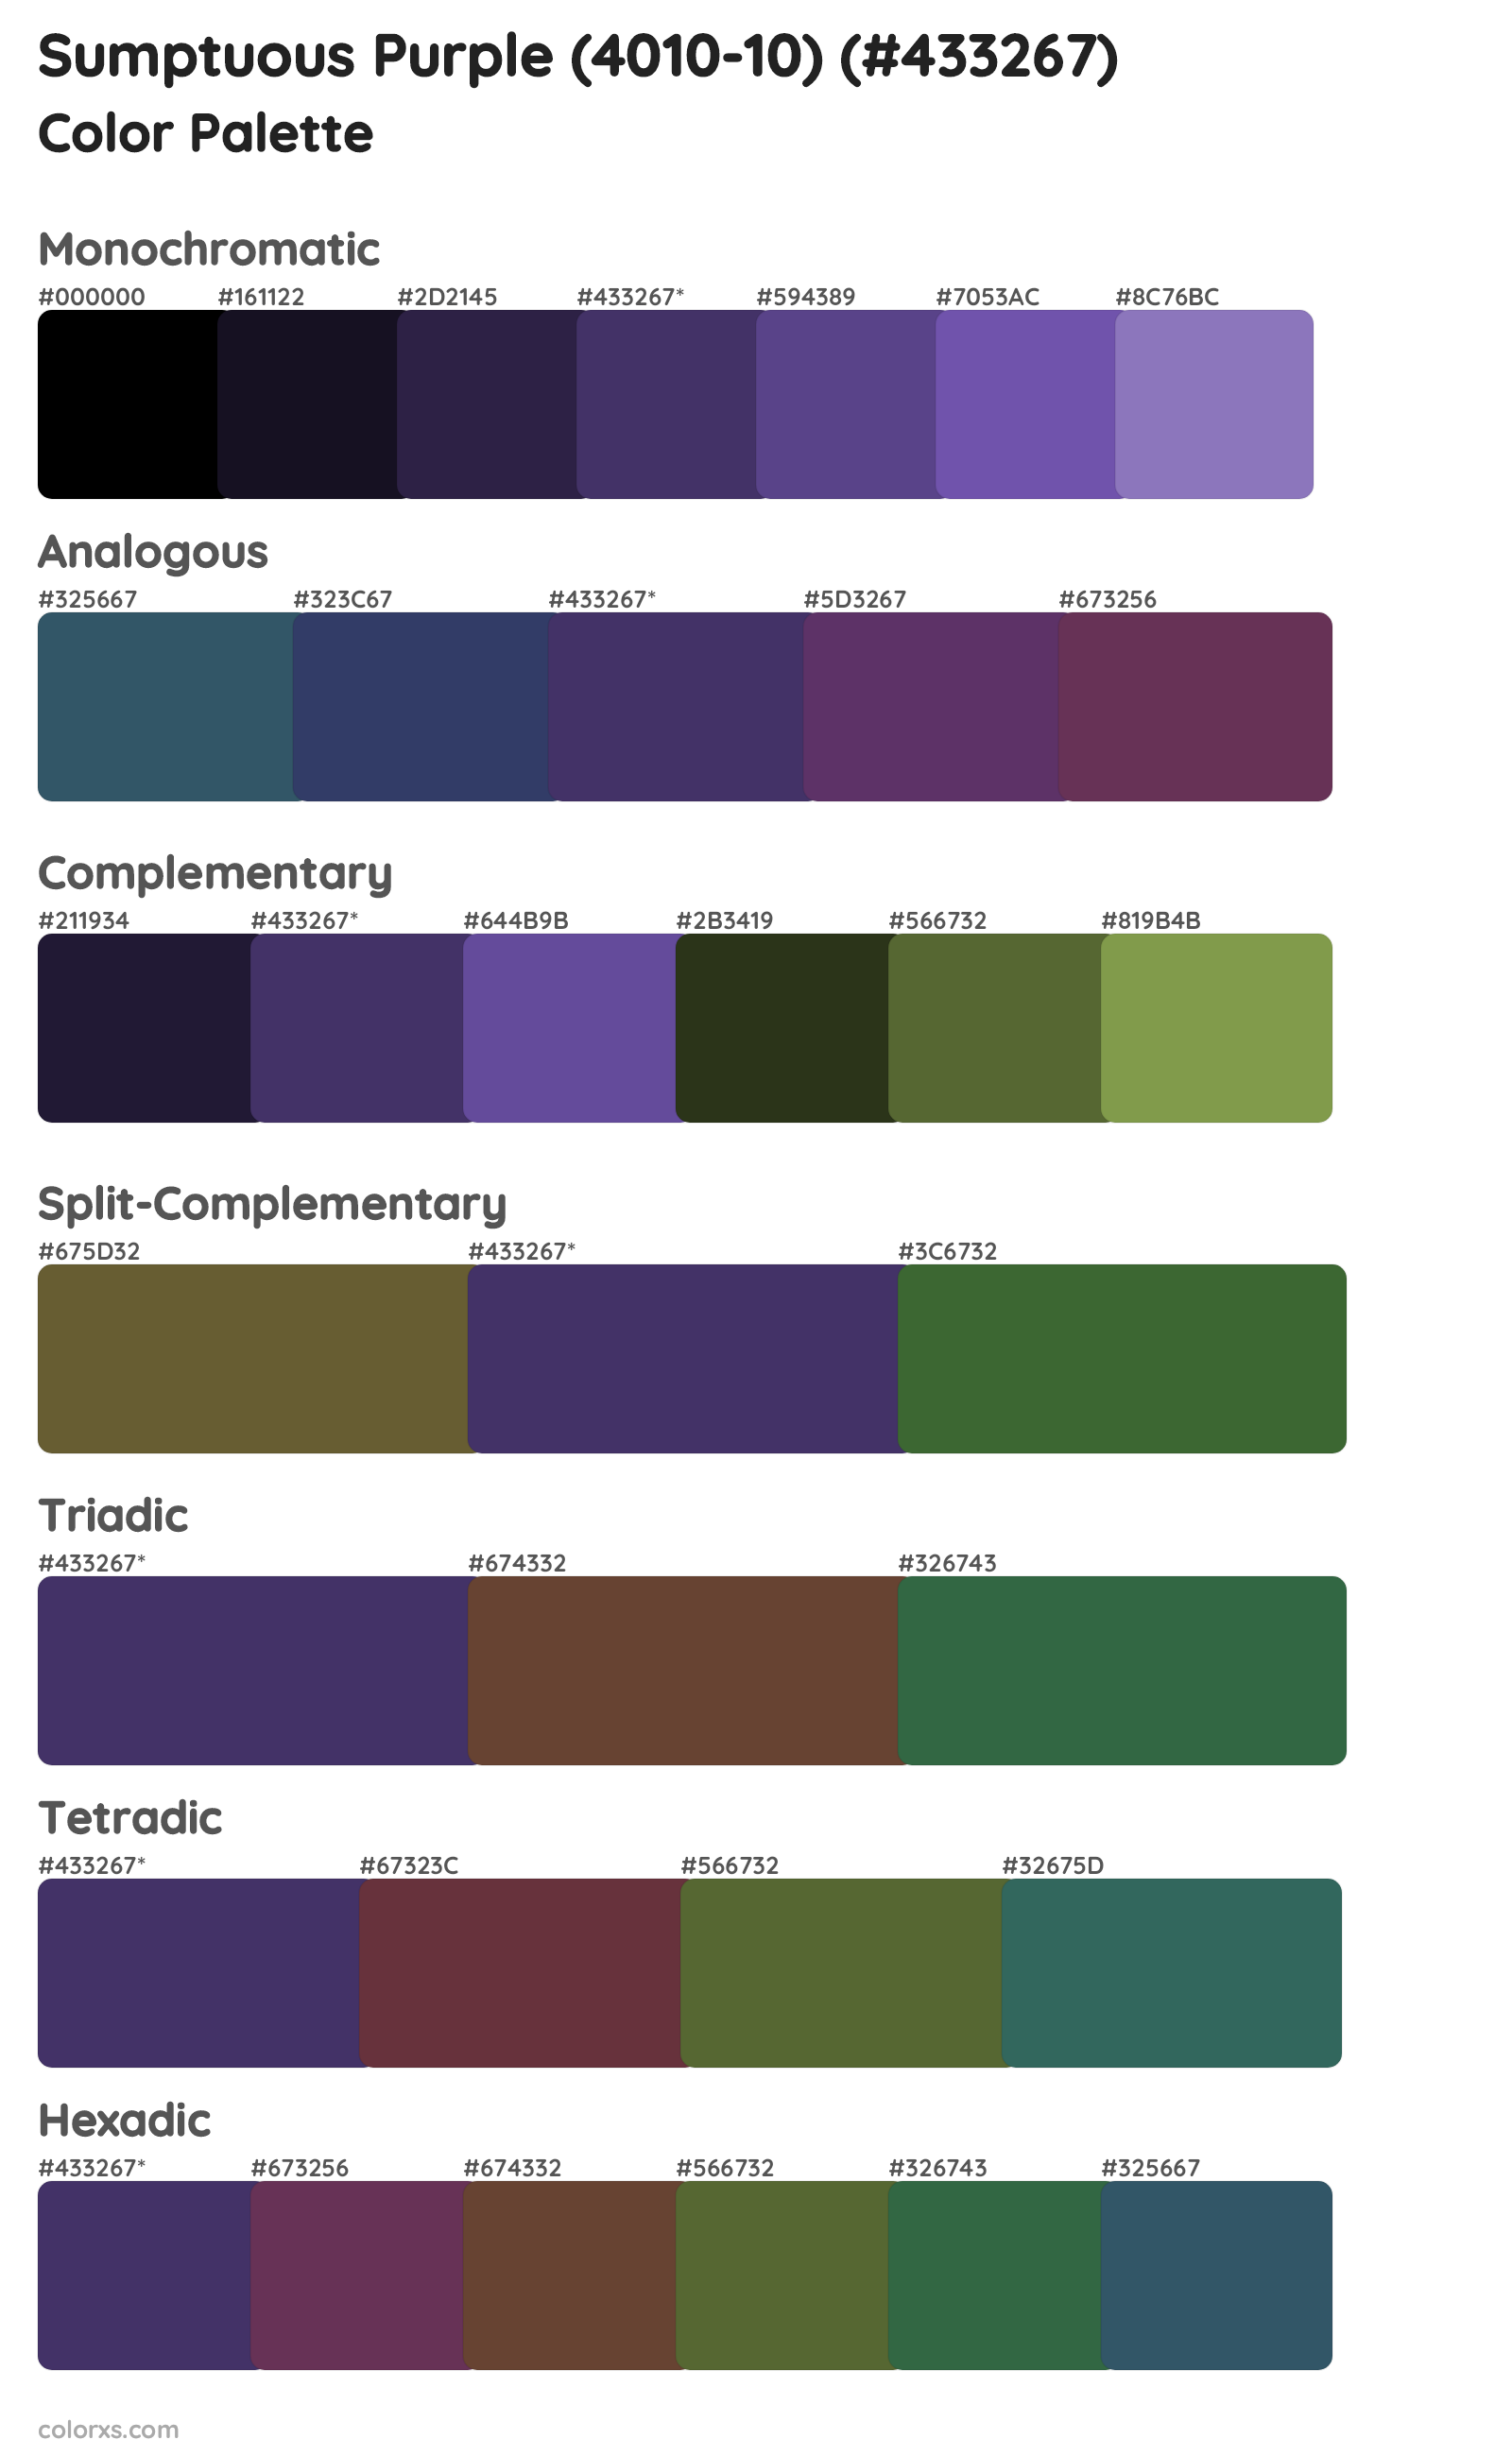 Sumptuous Purple (4010-10) Color Scheme Palettes